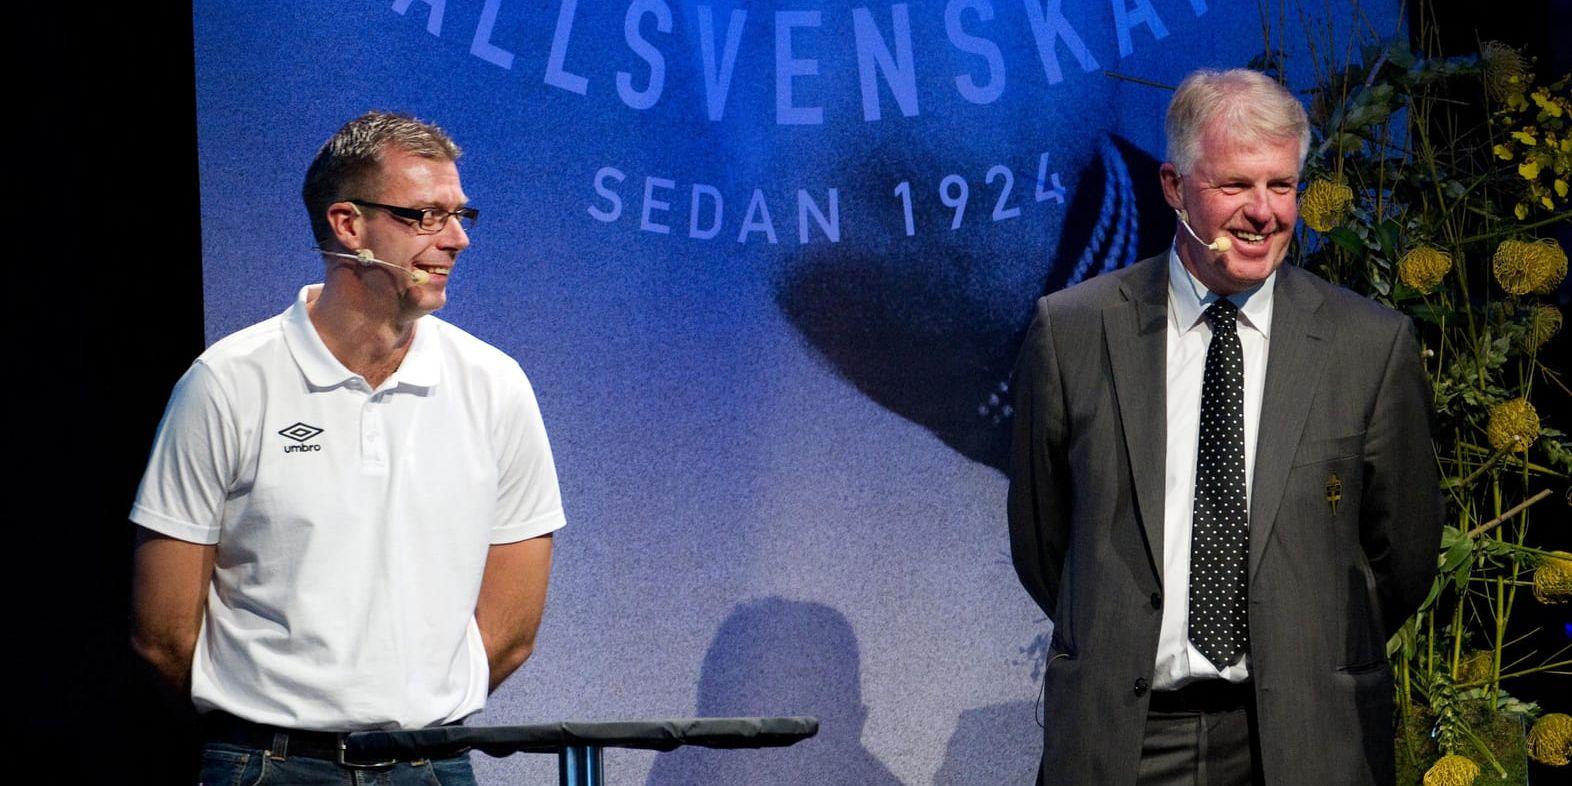 Bosse Karlsson, till höger, slutar som svensk domarbas efter anklagelser kopplade till metoo-uppropen. Arkivbild.